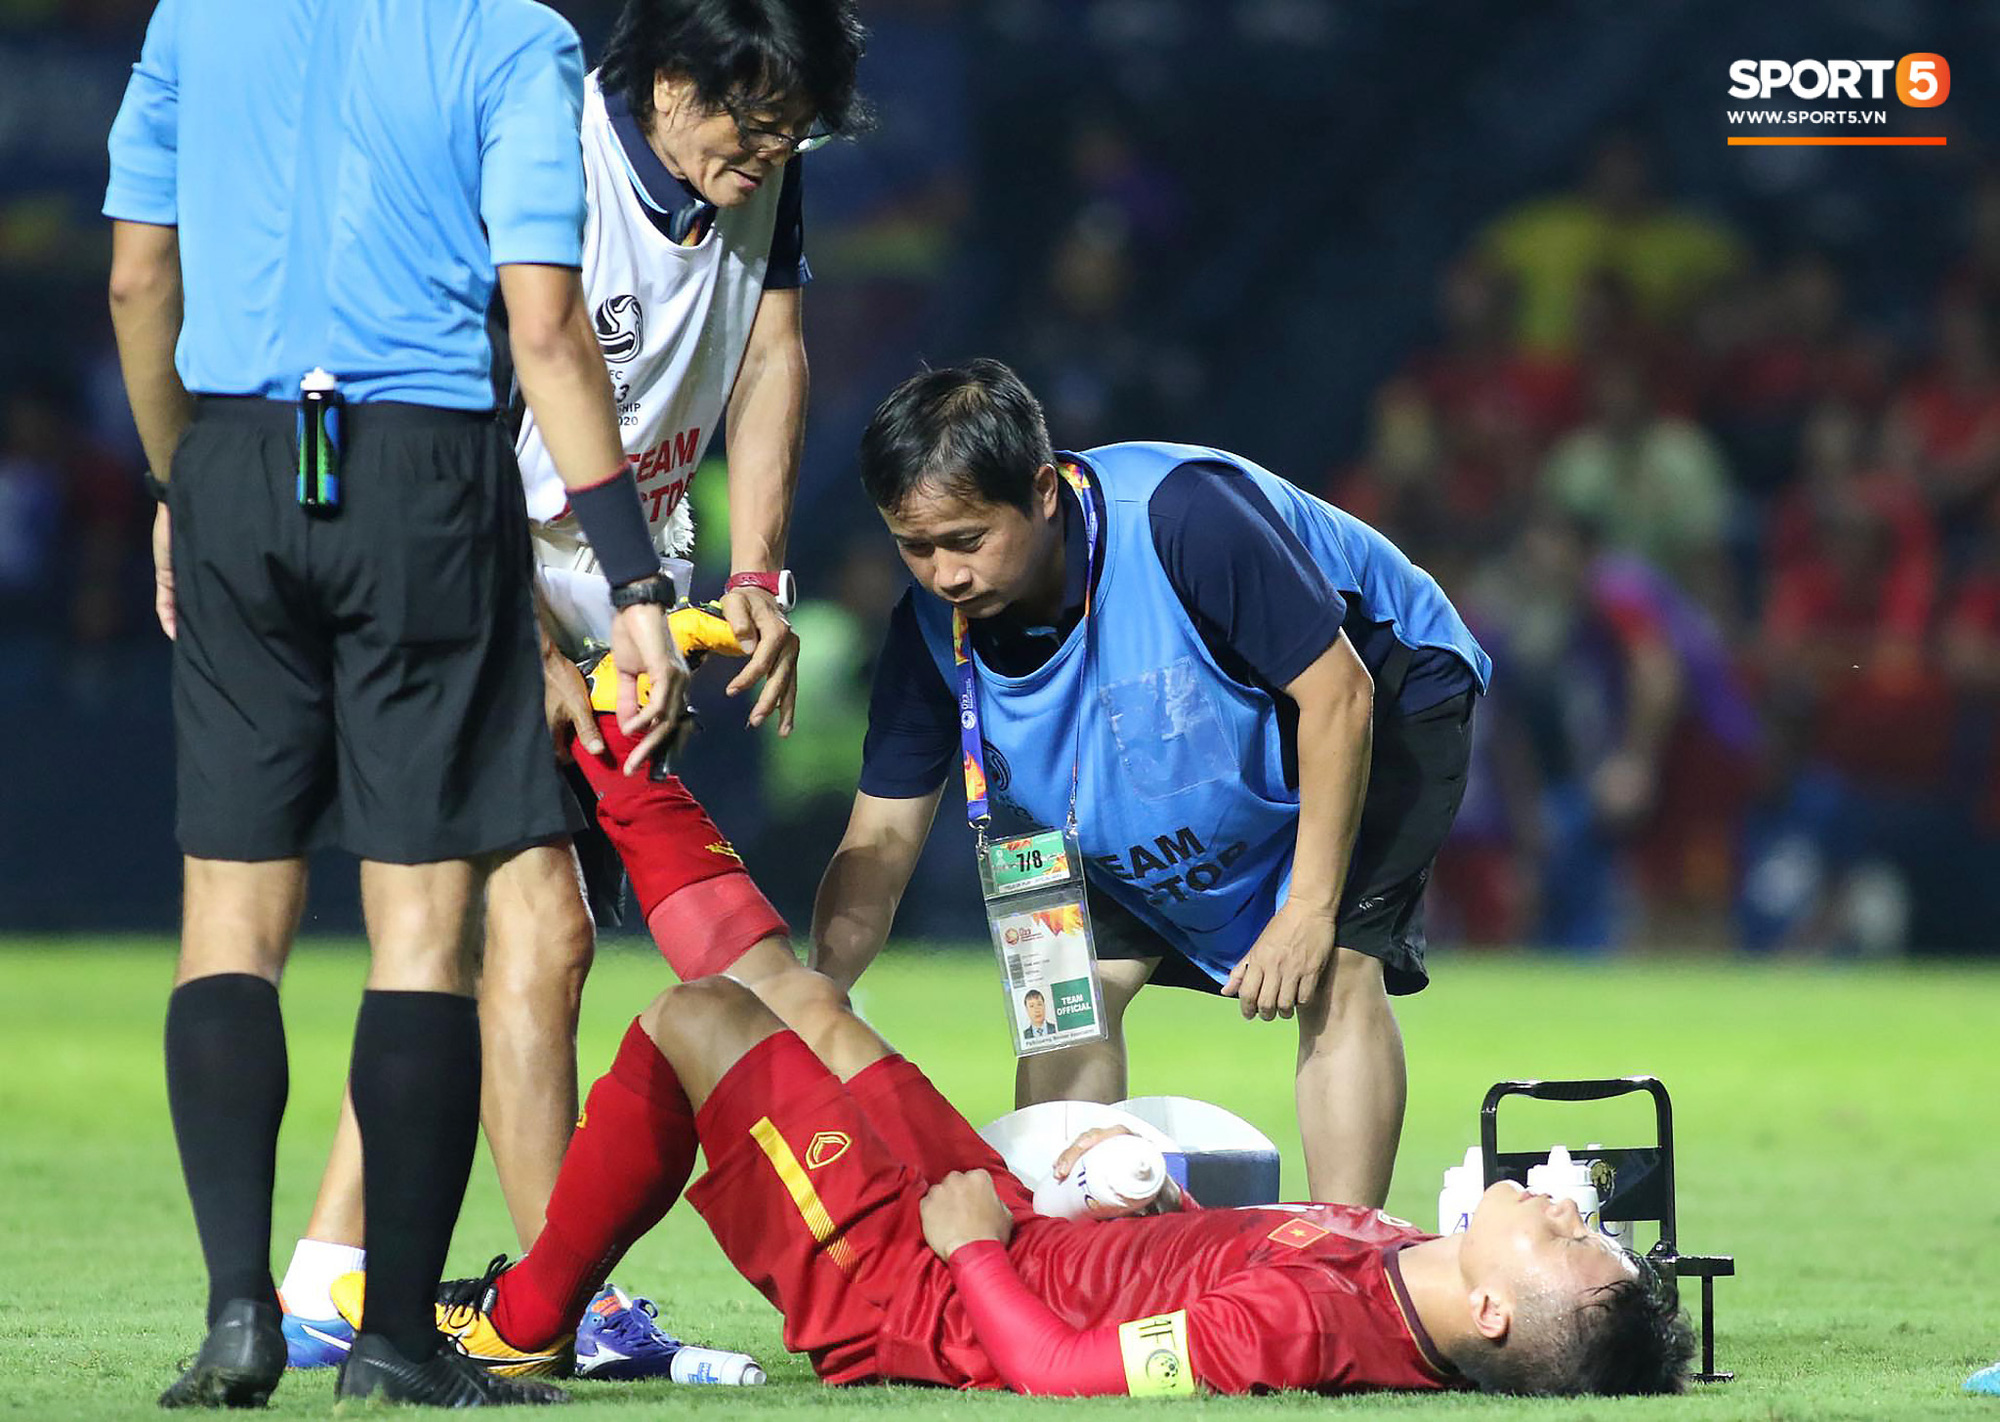 Cận cảnh Quang Hải bị cầu thủ U23 UAE đạp chân nguy hiểm từ phía sau, suýt gặp chấn thương nặng  - Ảnh 5.